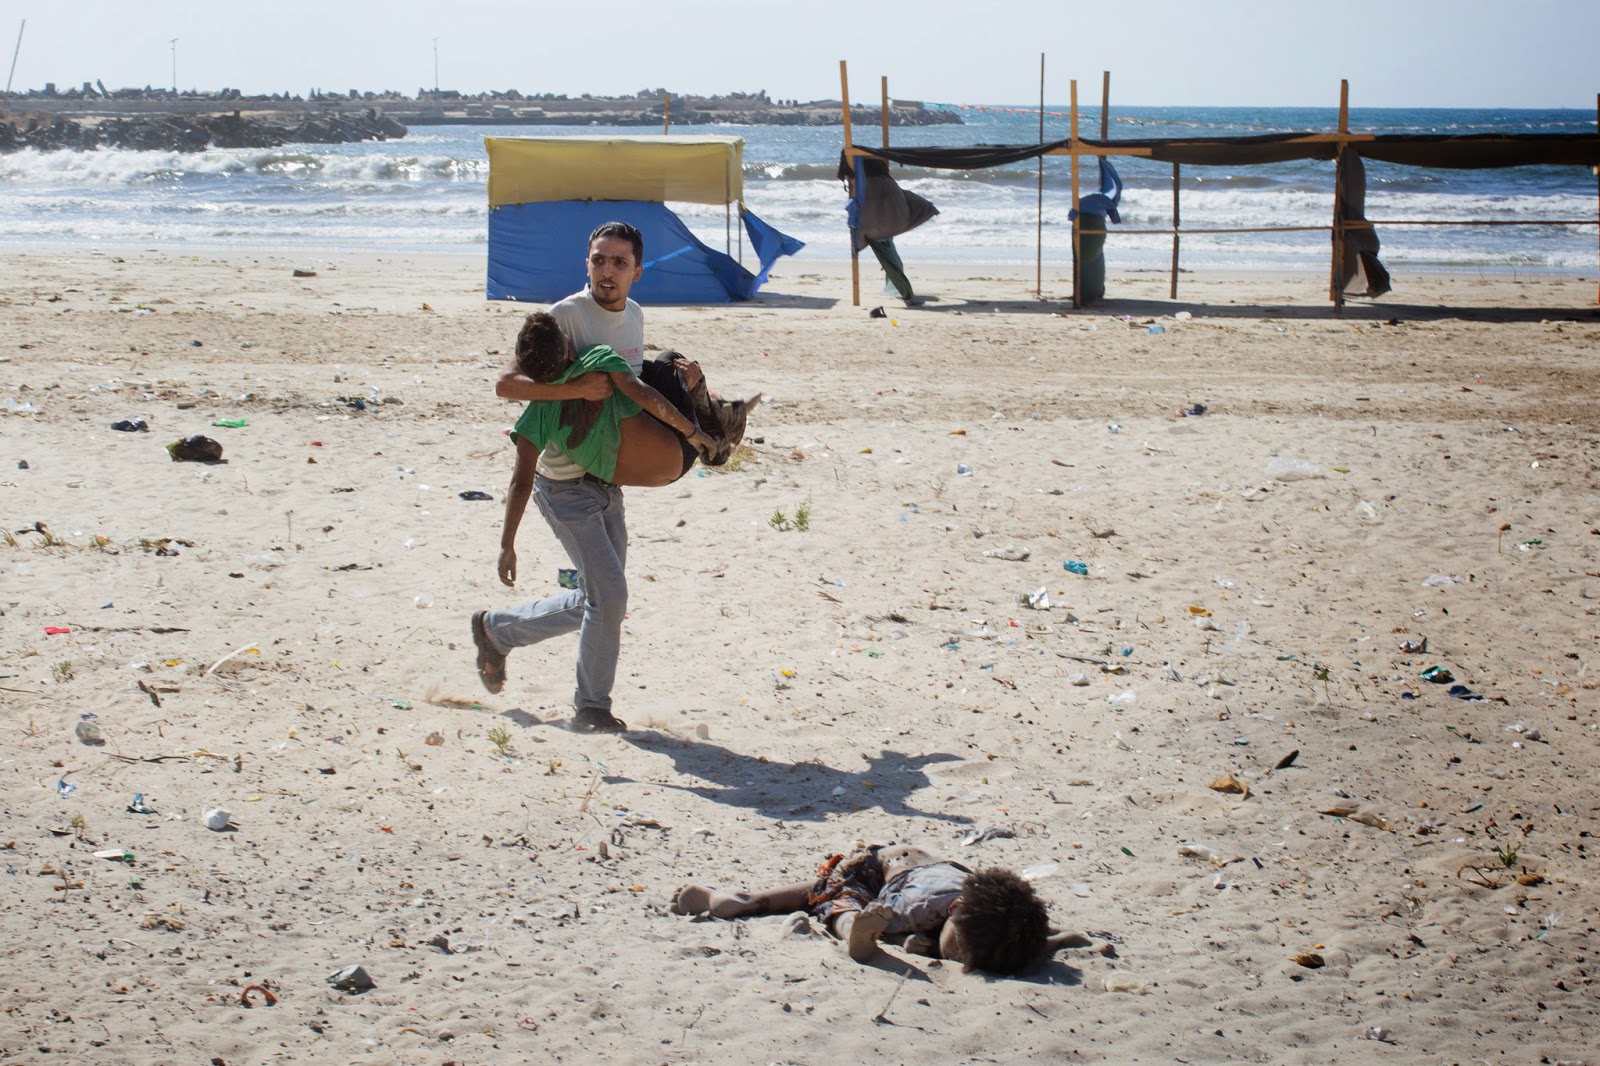 Children on a beach in Gaza, July 16 2014.